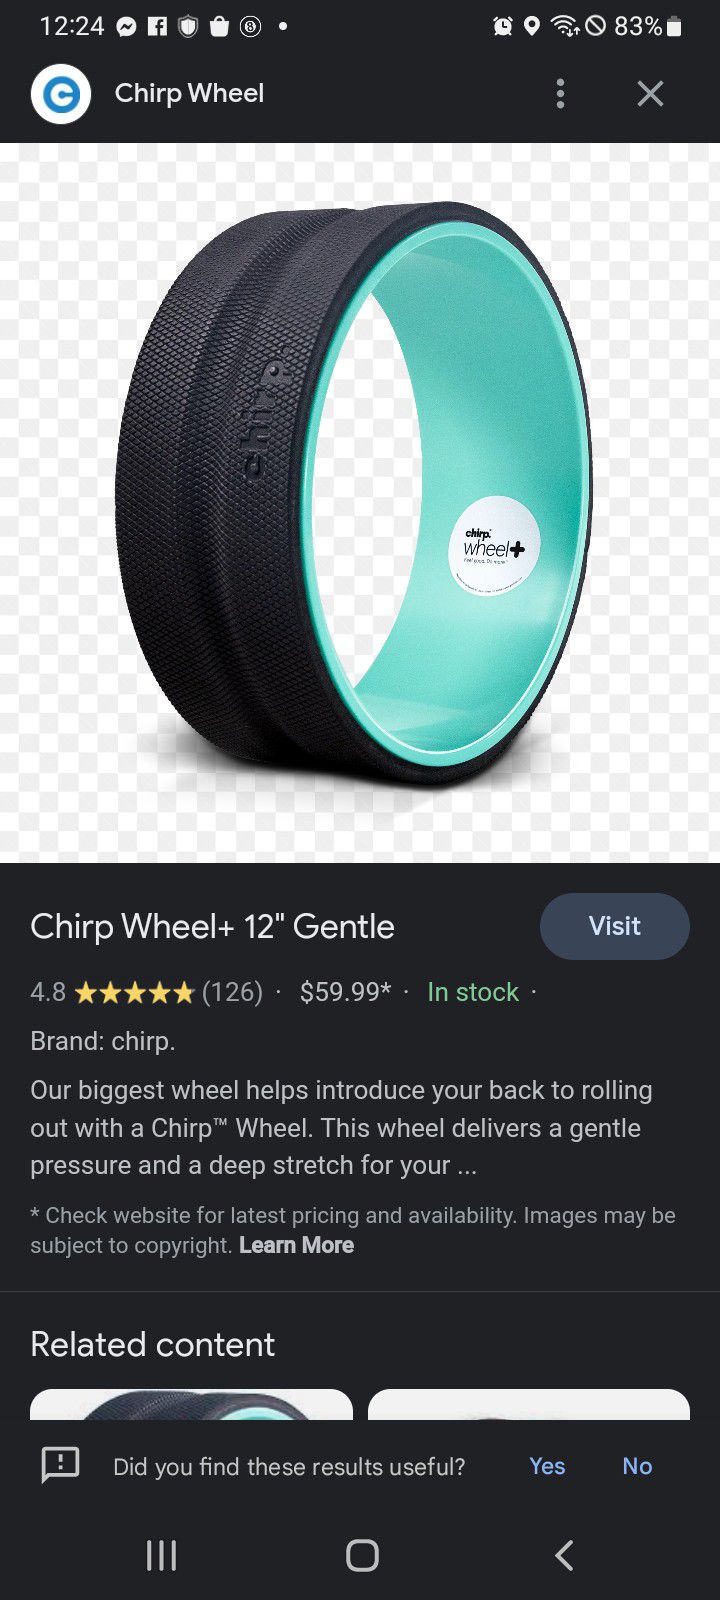 Chirp Wheel 12" Gentle